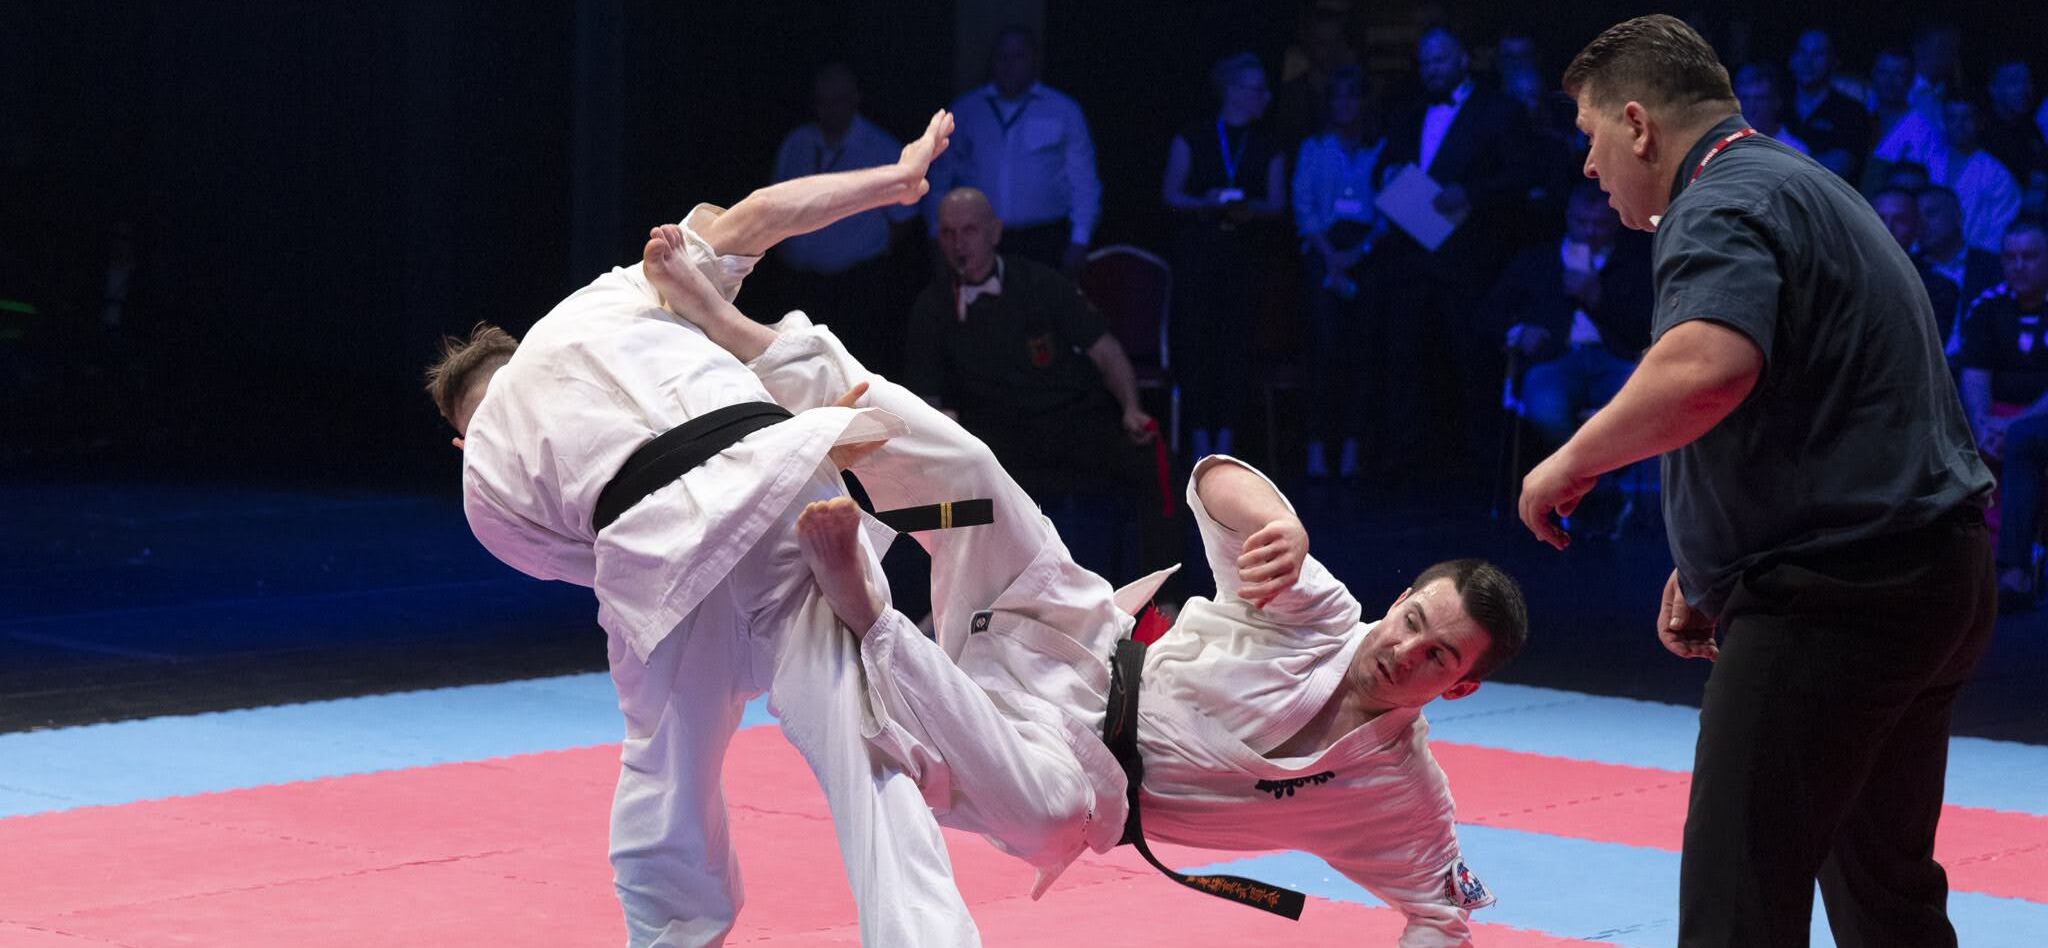 zawodnicy walczący w judo